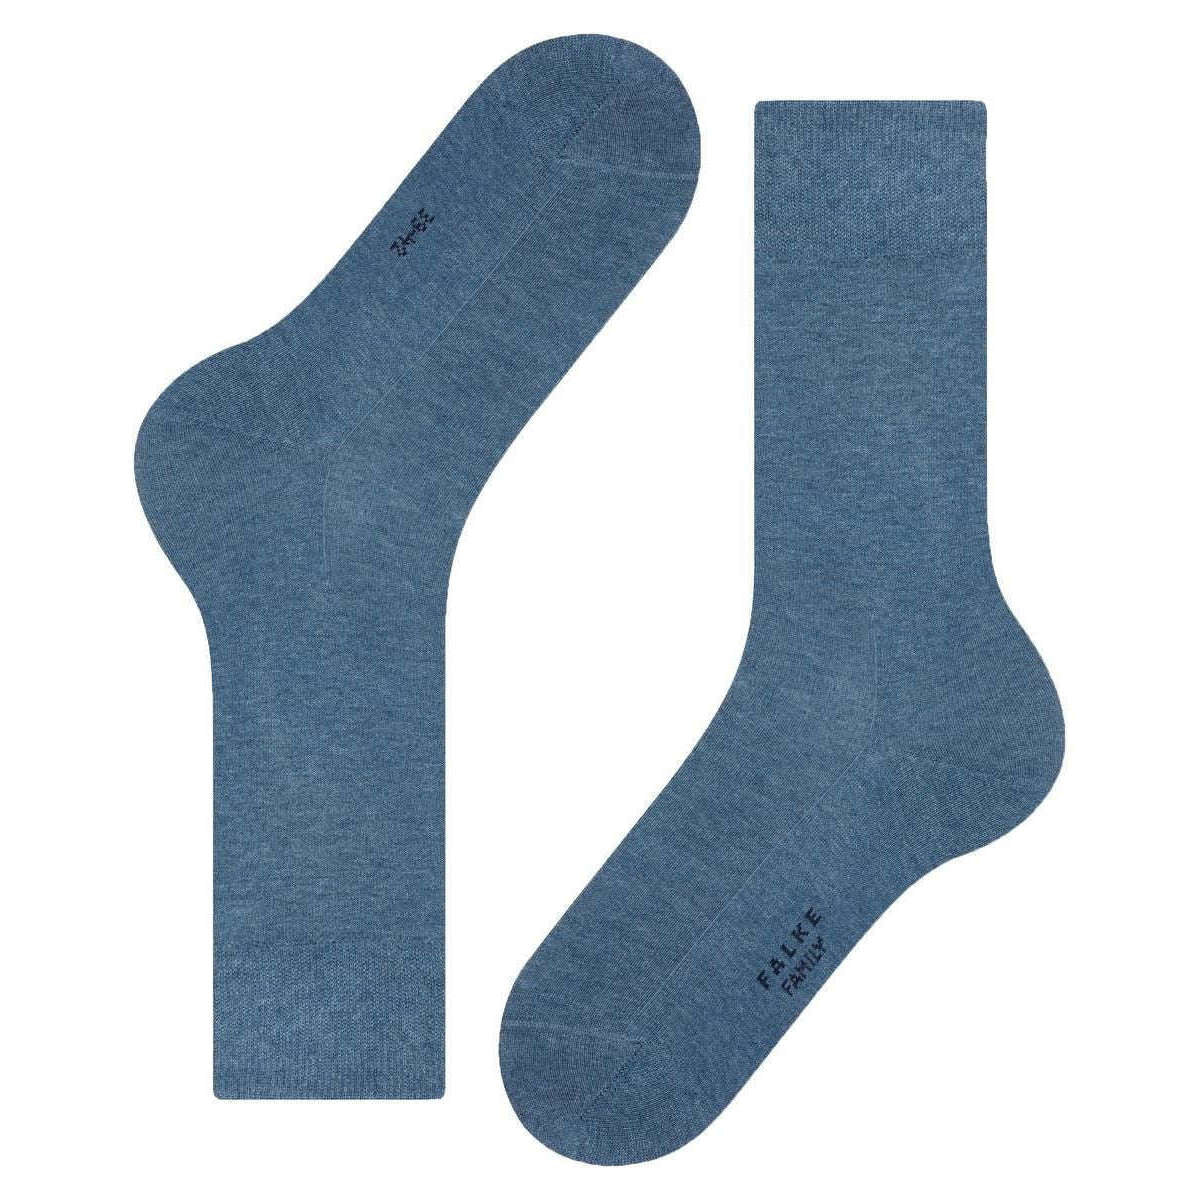 Falke Family Socks - Light Denim Blue